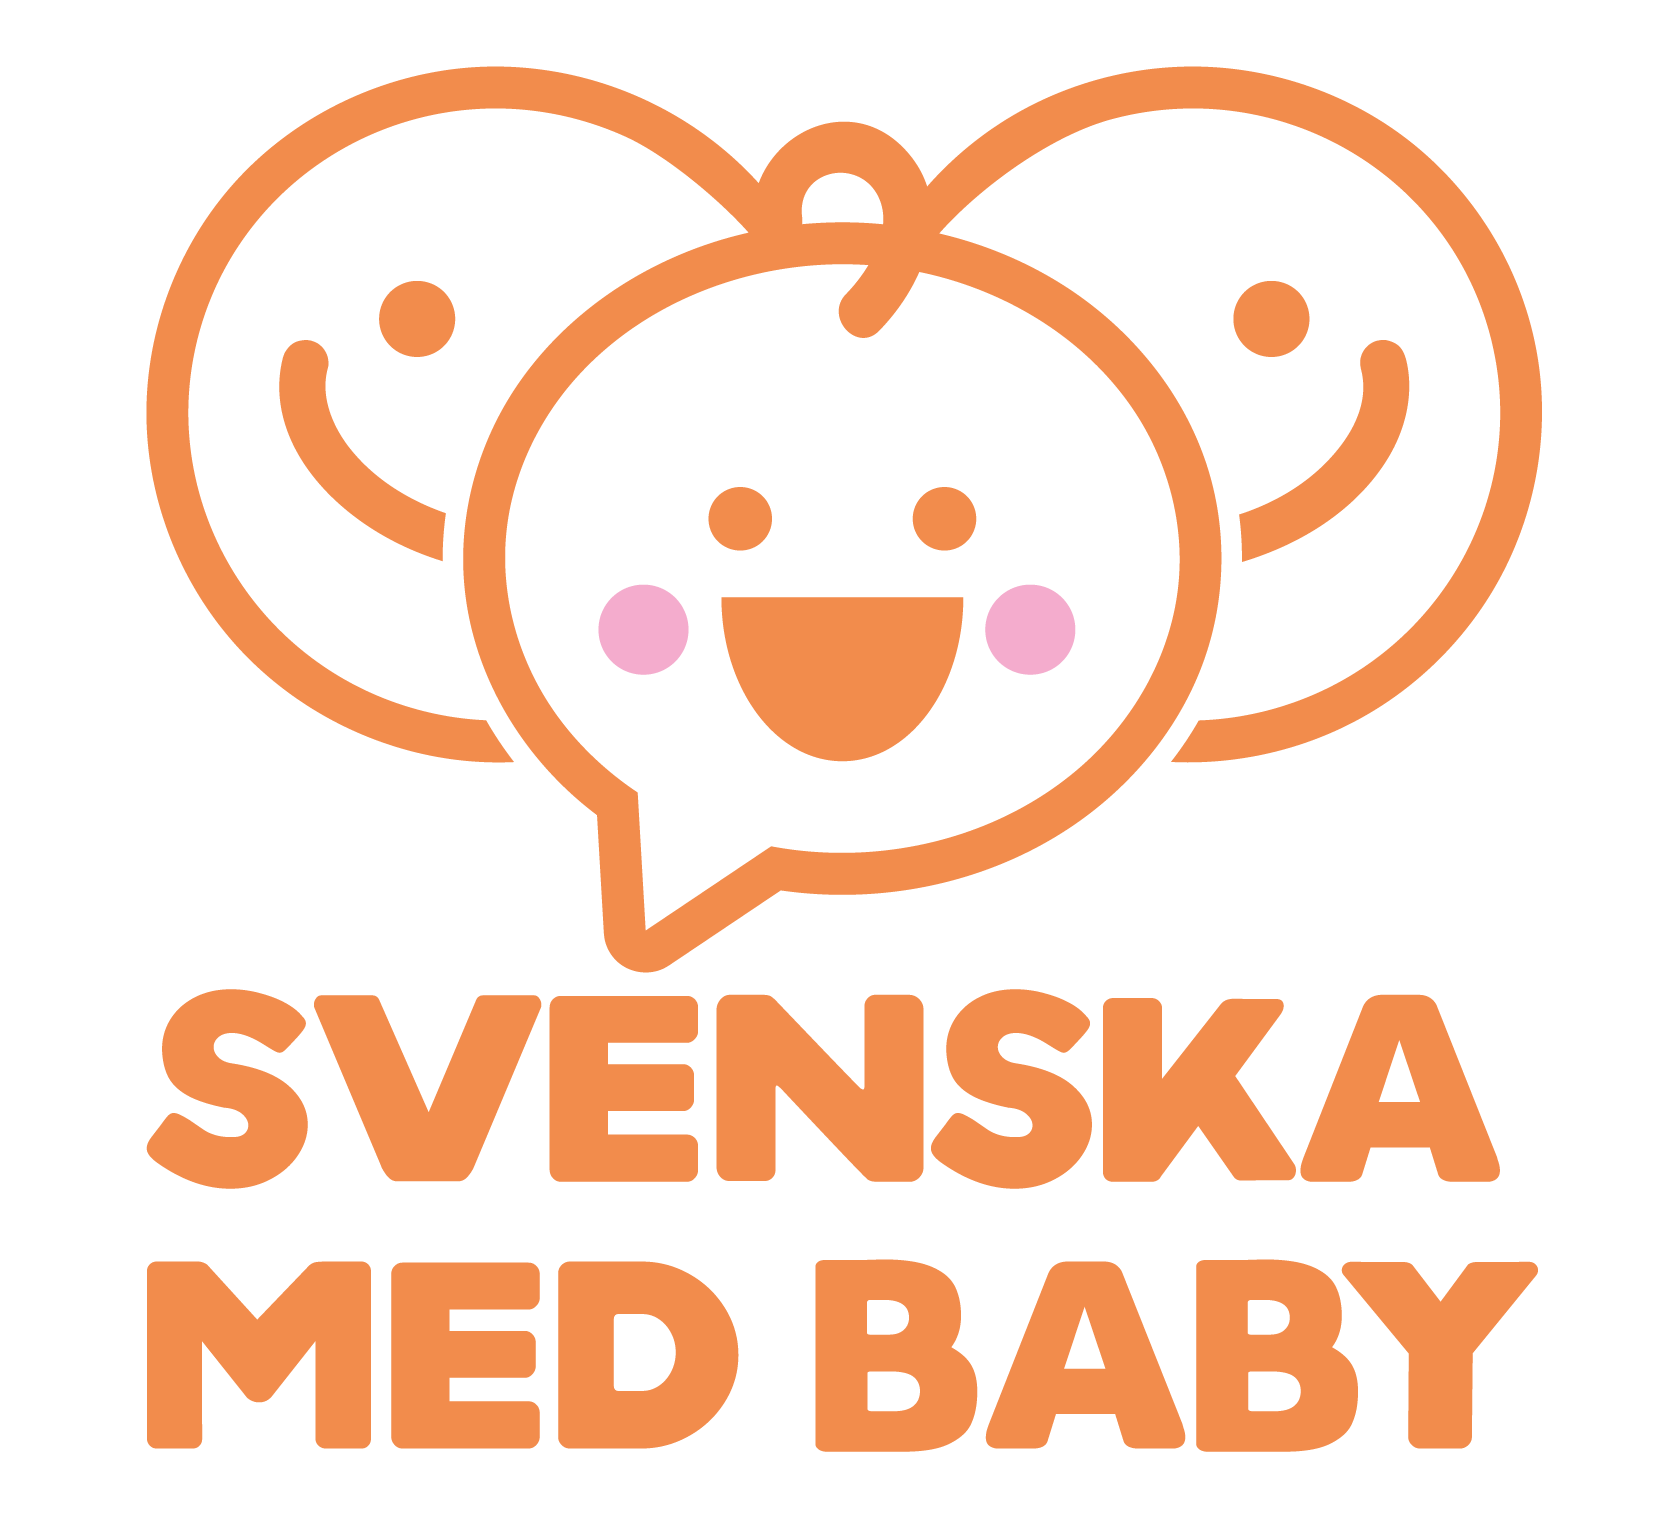 Svenska med baby söker styrelseledamöter